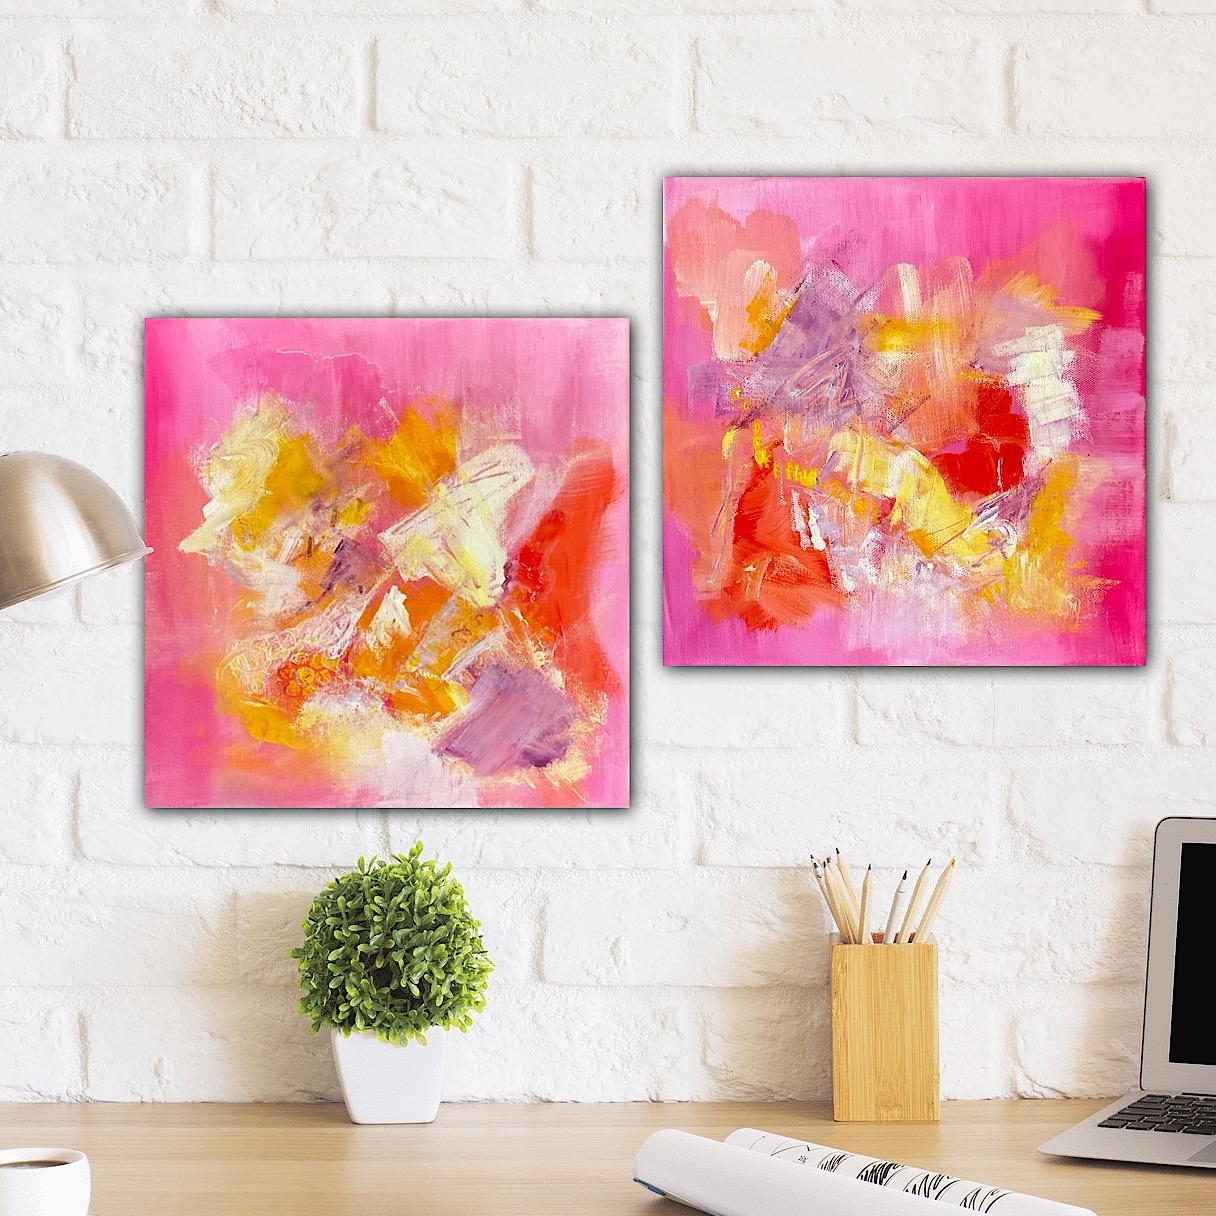 Farben des Glücks 💕 - Duo Set Unikate in Acryl - zusammen 60 x 30 cm

#couchstyle #deko #kunst #couchmagazin #farbenfroh #wanddeko #art 